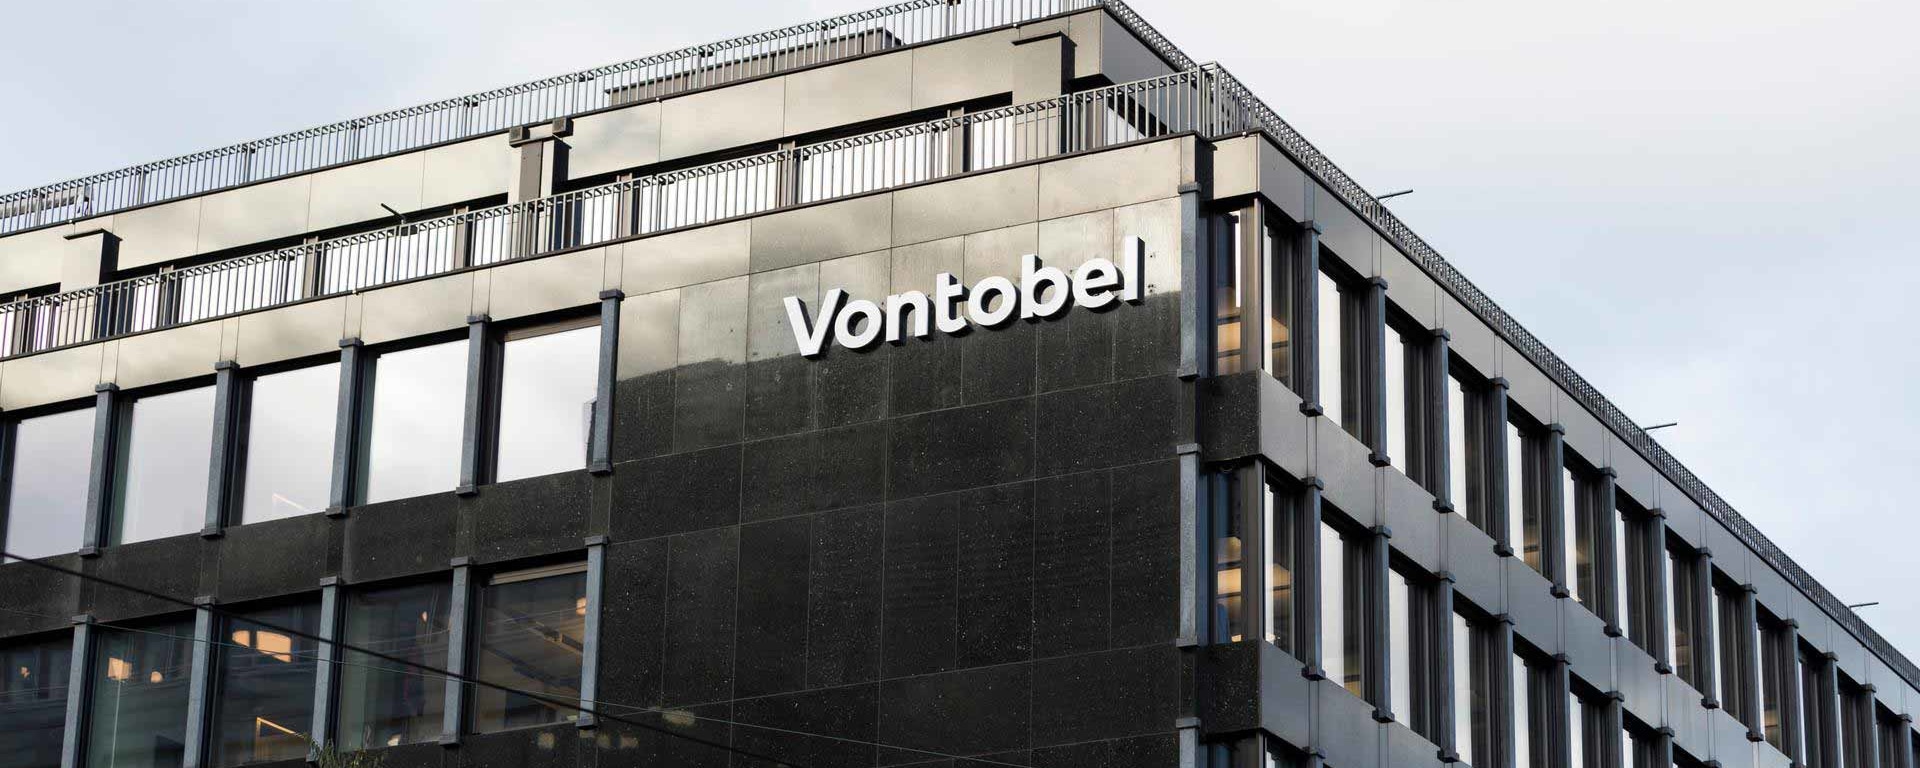 Le bâtiment de la banque Vontobel - vue extérieure